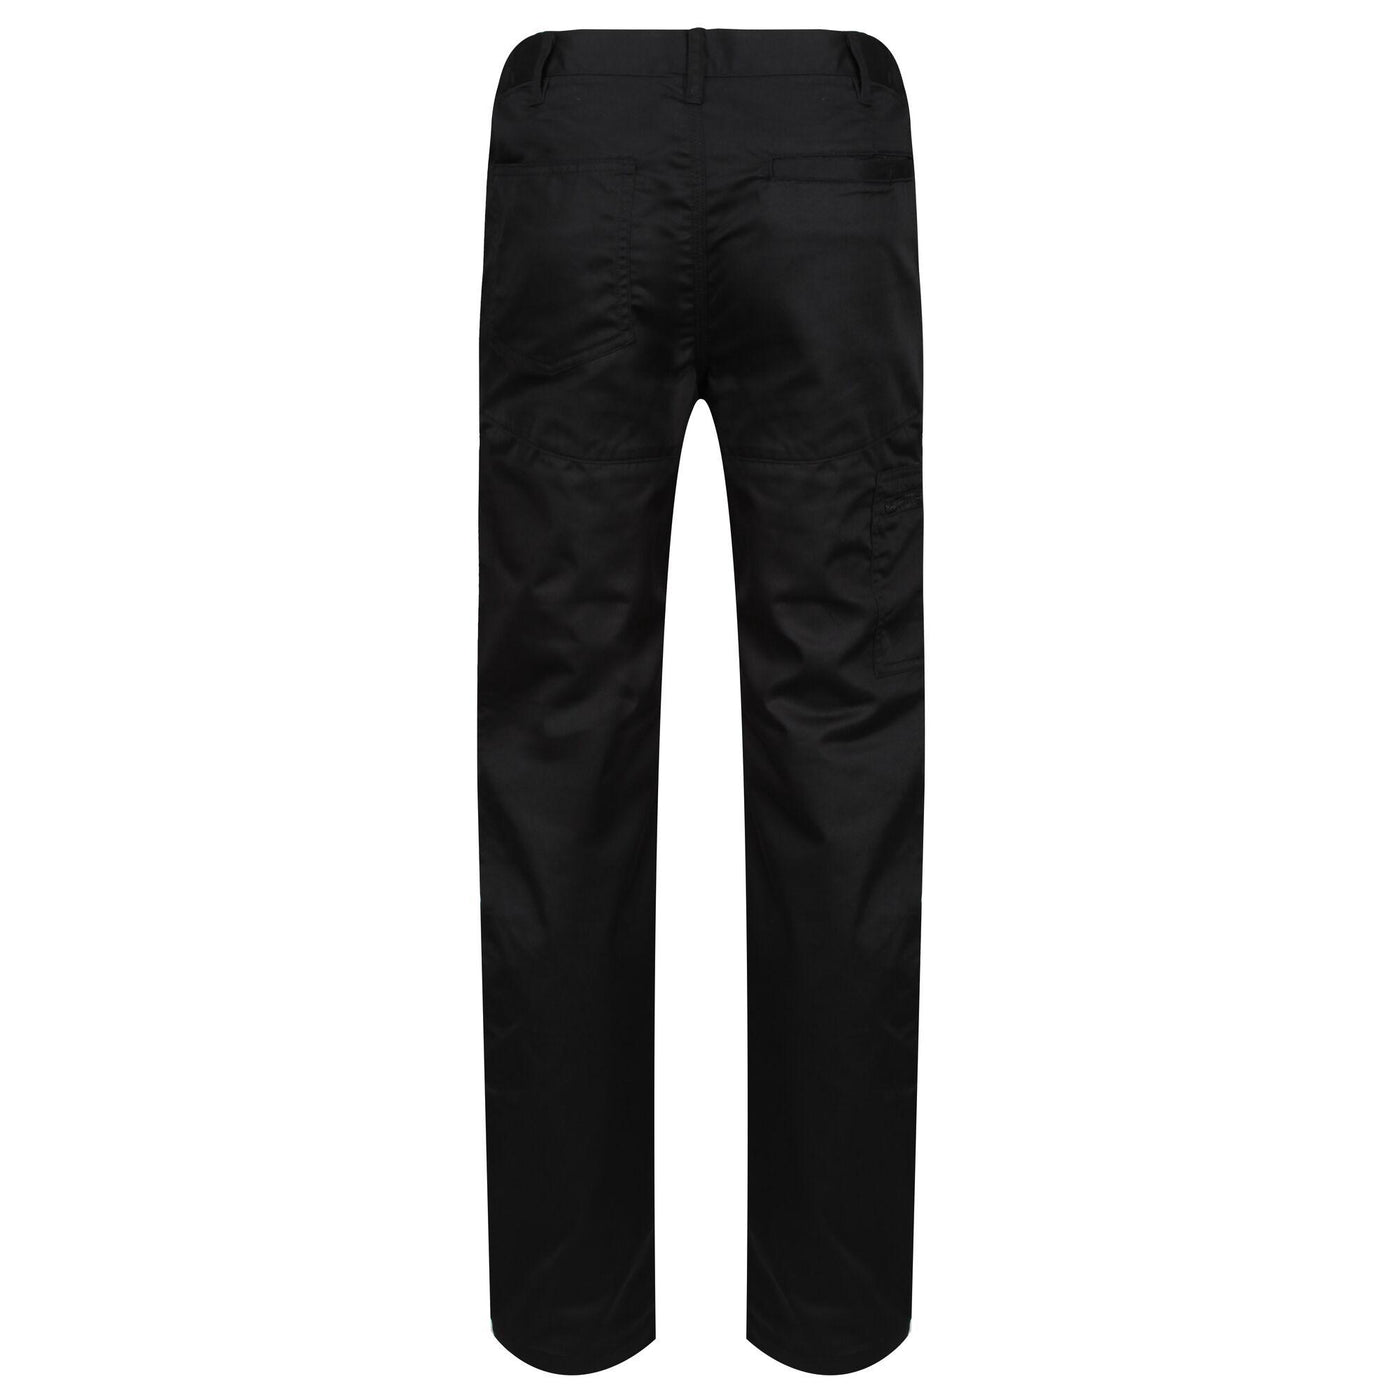 Regatta Professional Mens Pro Action Trousers Black 2#colour_black